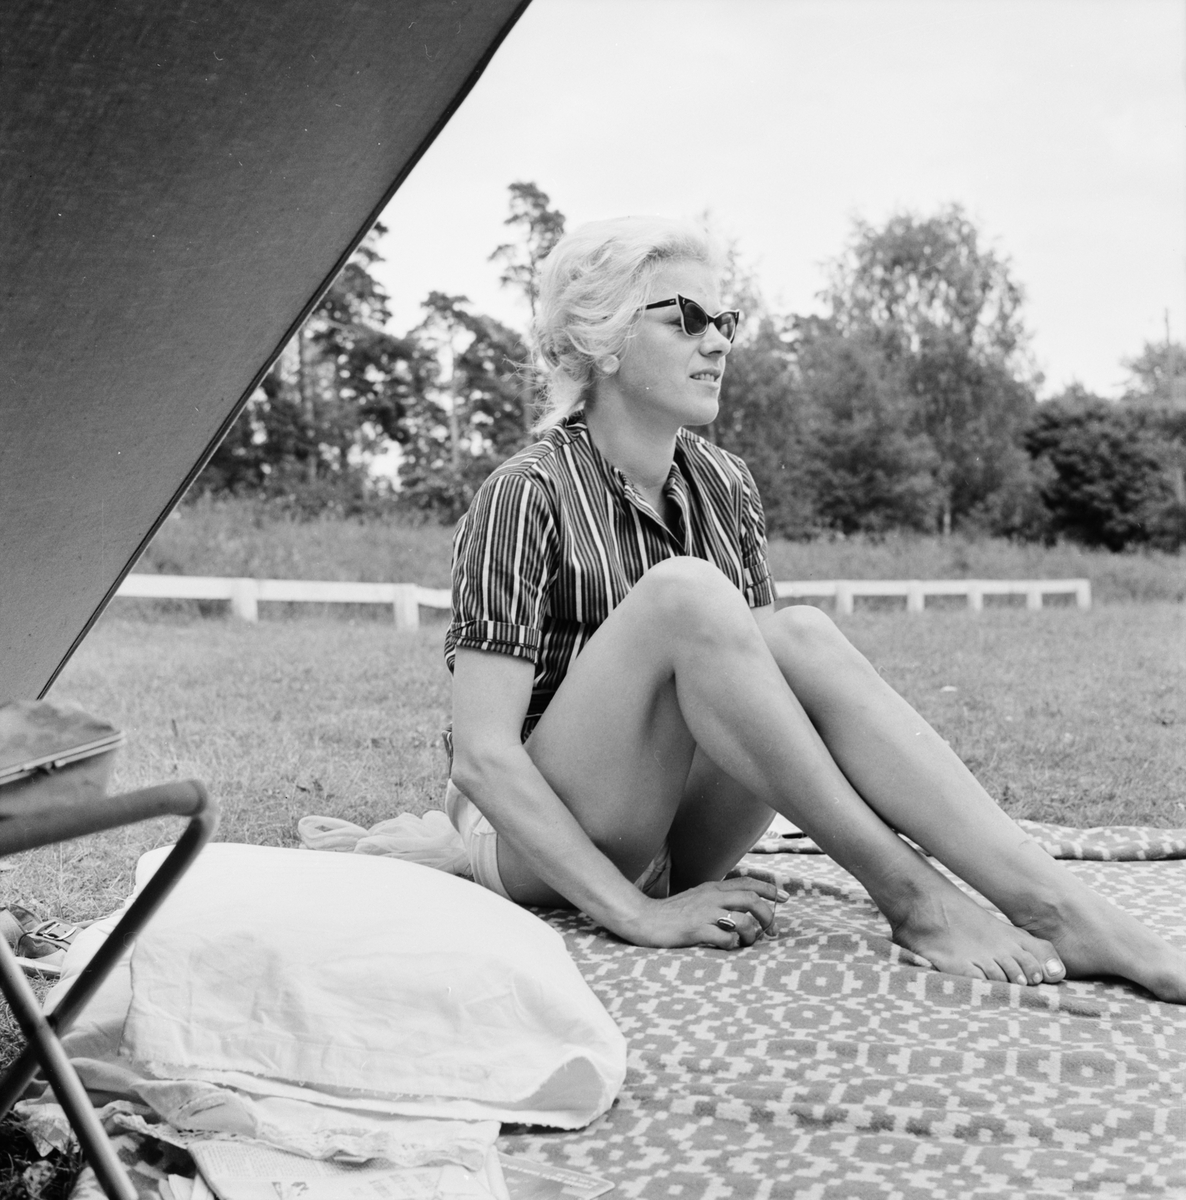 "Familjesemester i tält, julivärmen lockar många", Uppland juli 1961